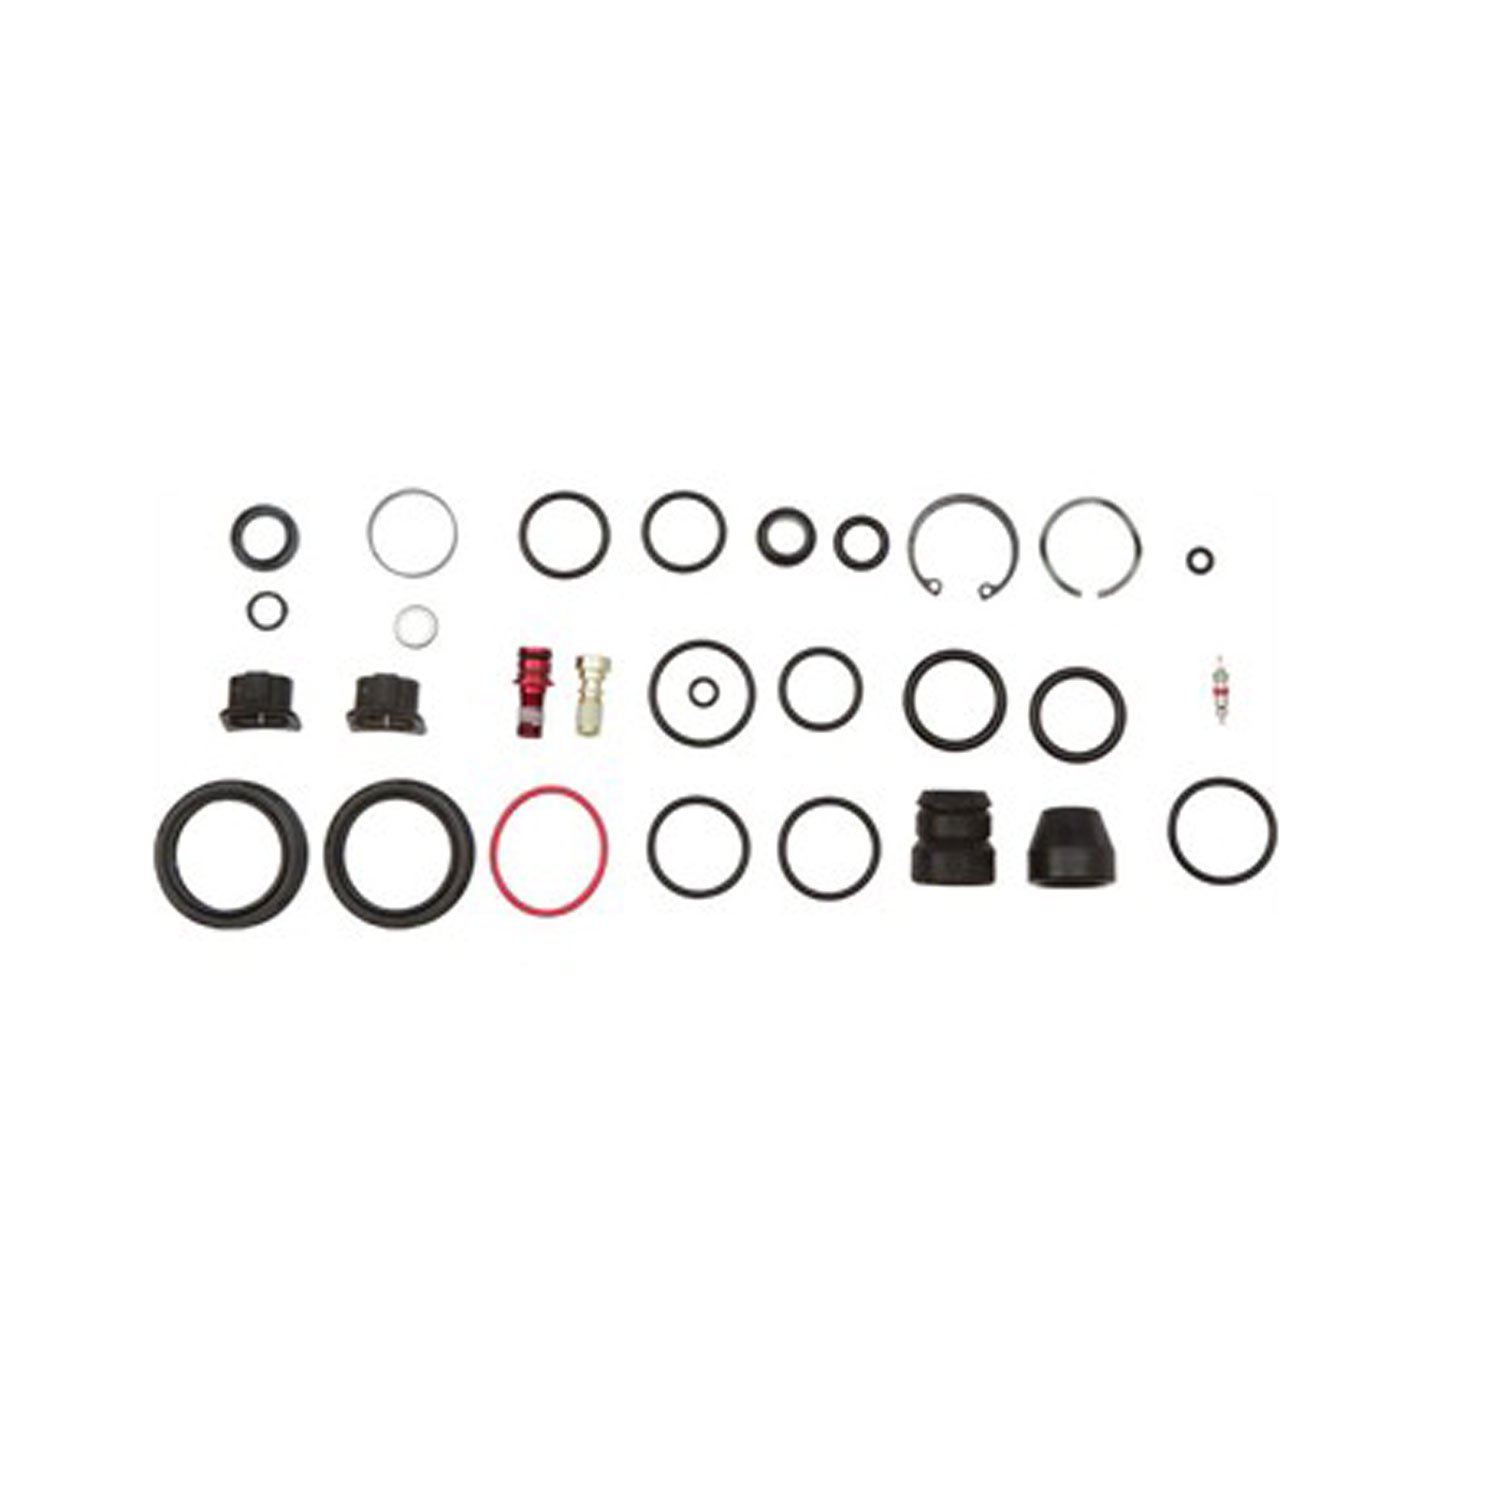 Bilde av Rockshox Service Kit, Full For Rs1 29"seals, Foam Rings, O-ring Seals